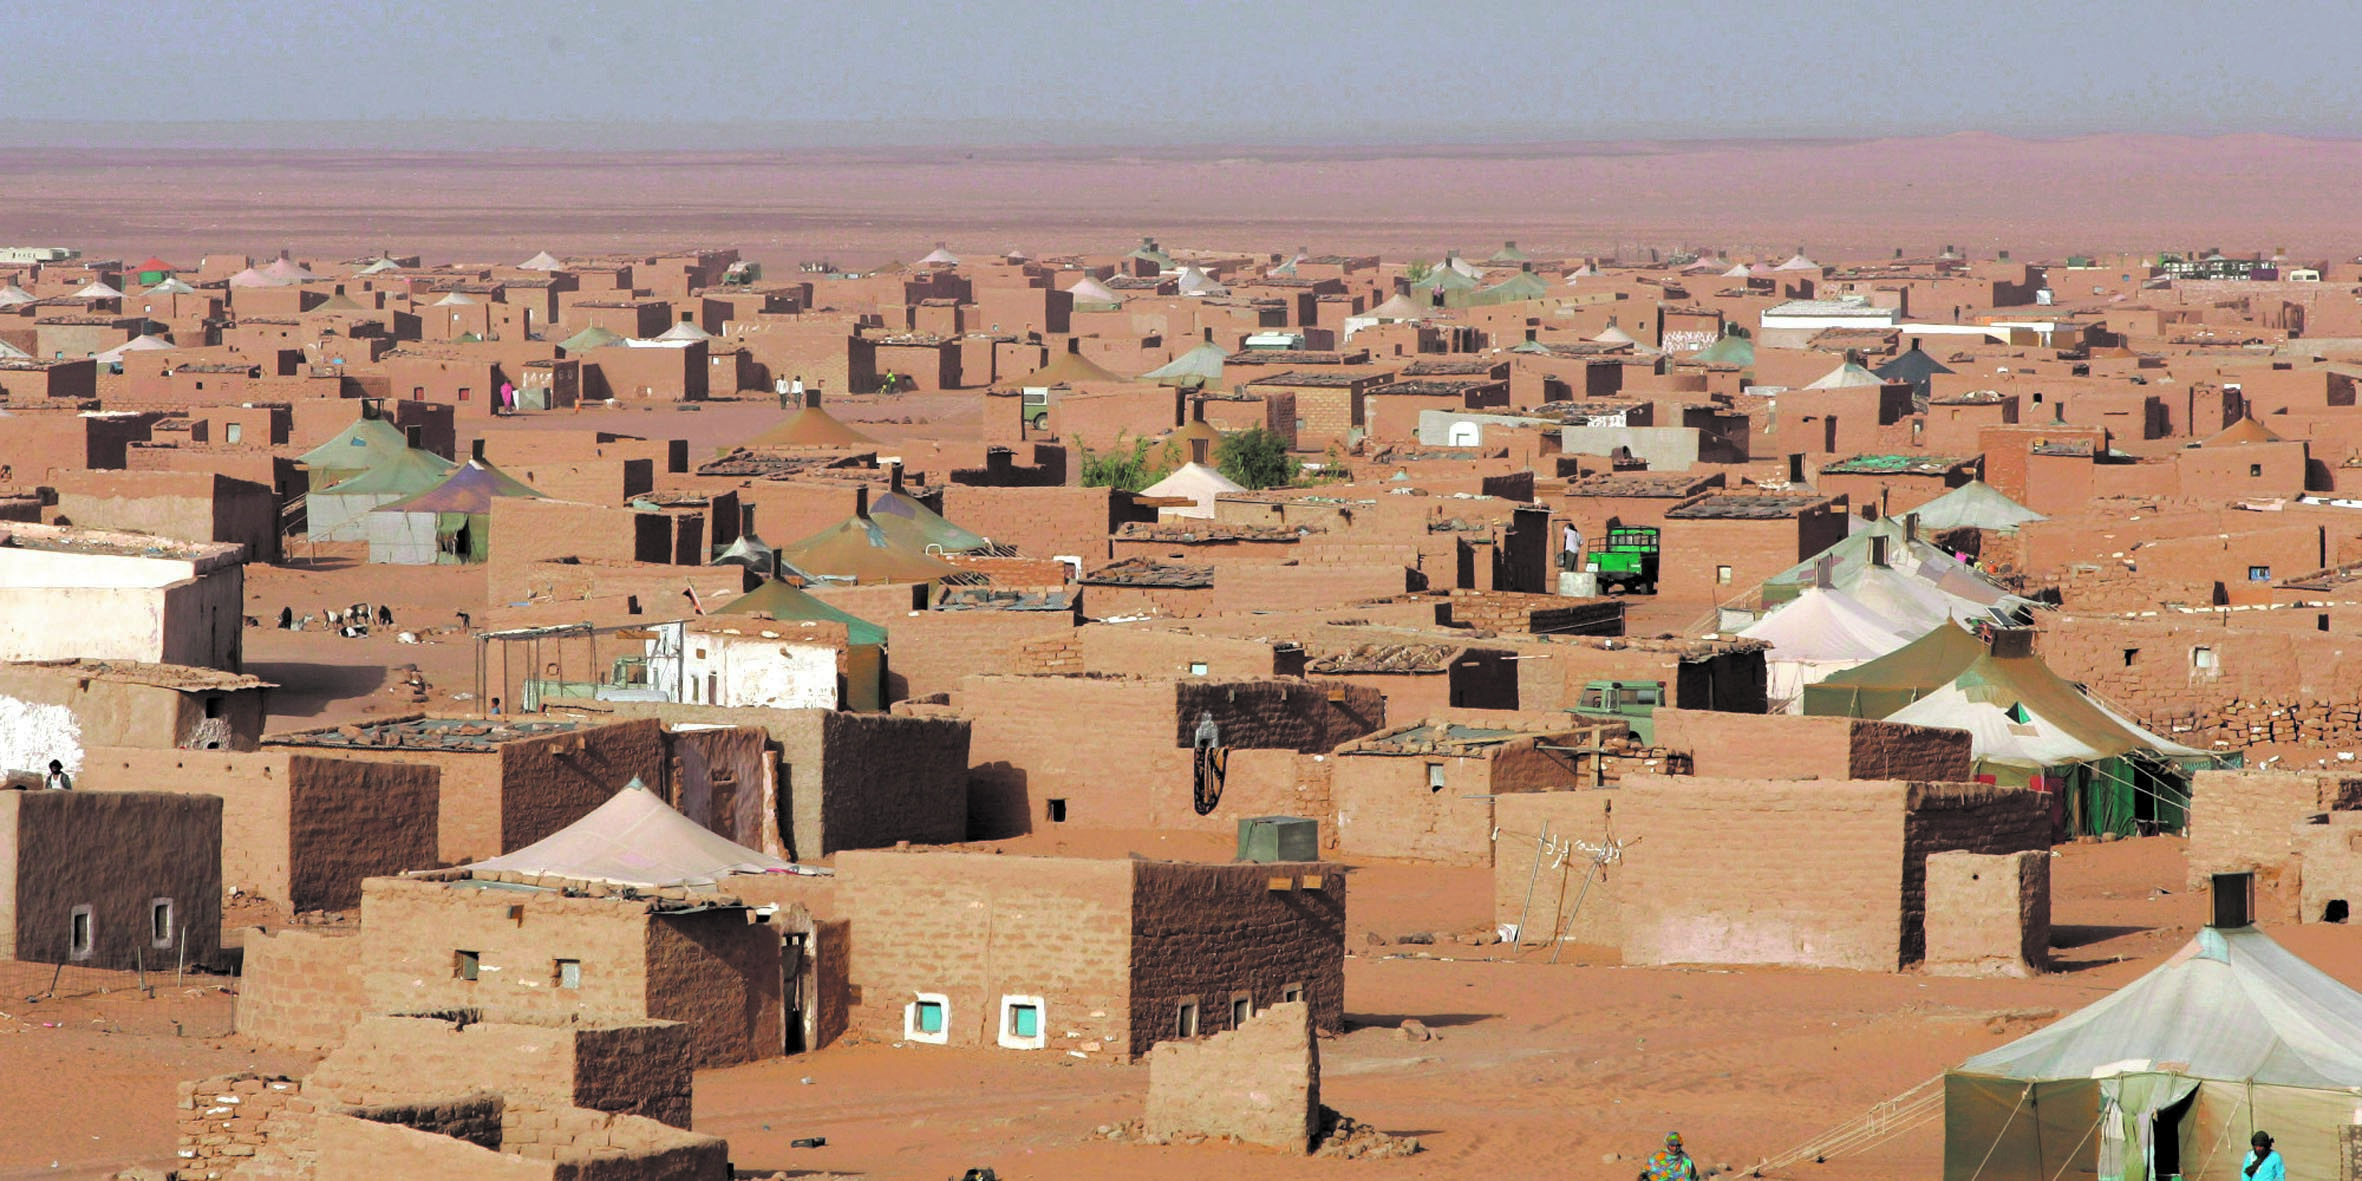 La tempête qui souffle sur l’Algérie ébranle le Polisario